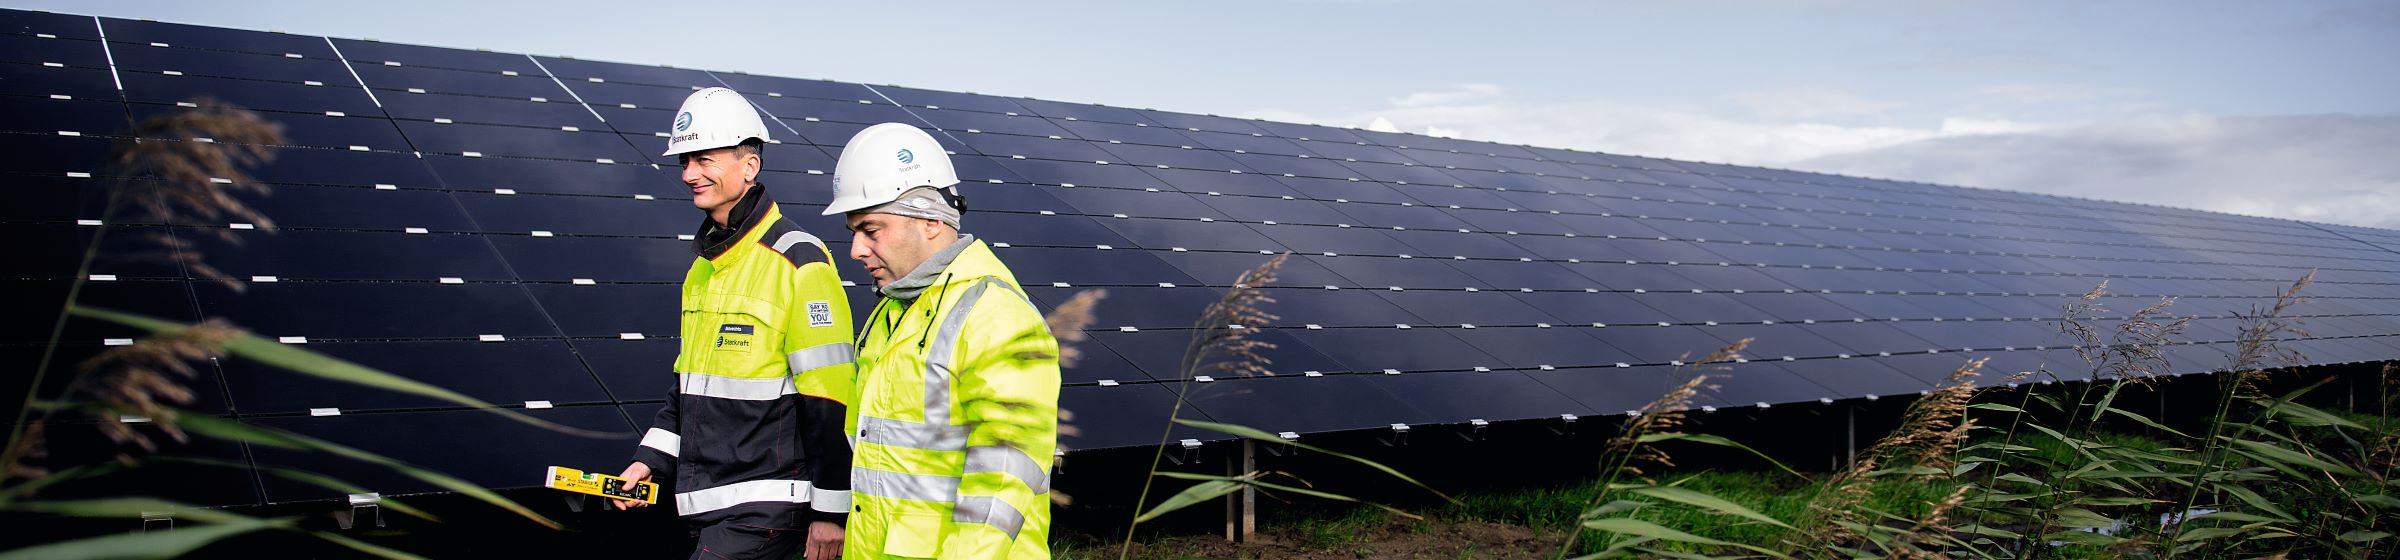 Zwei Statkraft-Arbeiter in Sicherheitskleidung vor einer großen Solaranlage